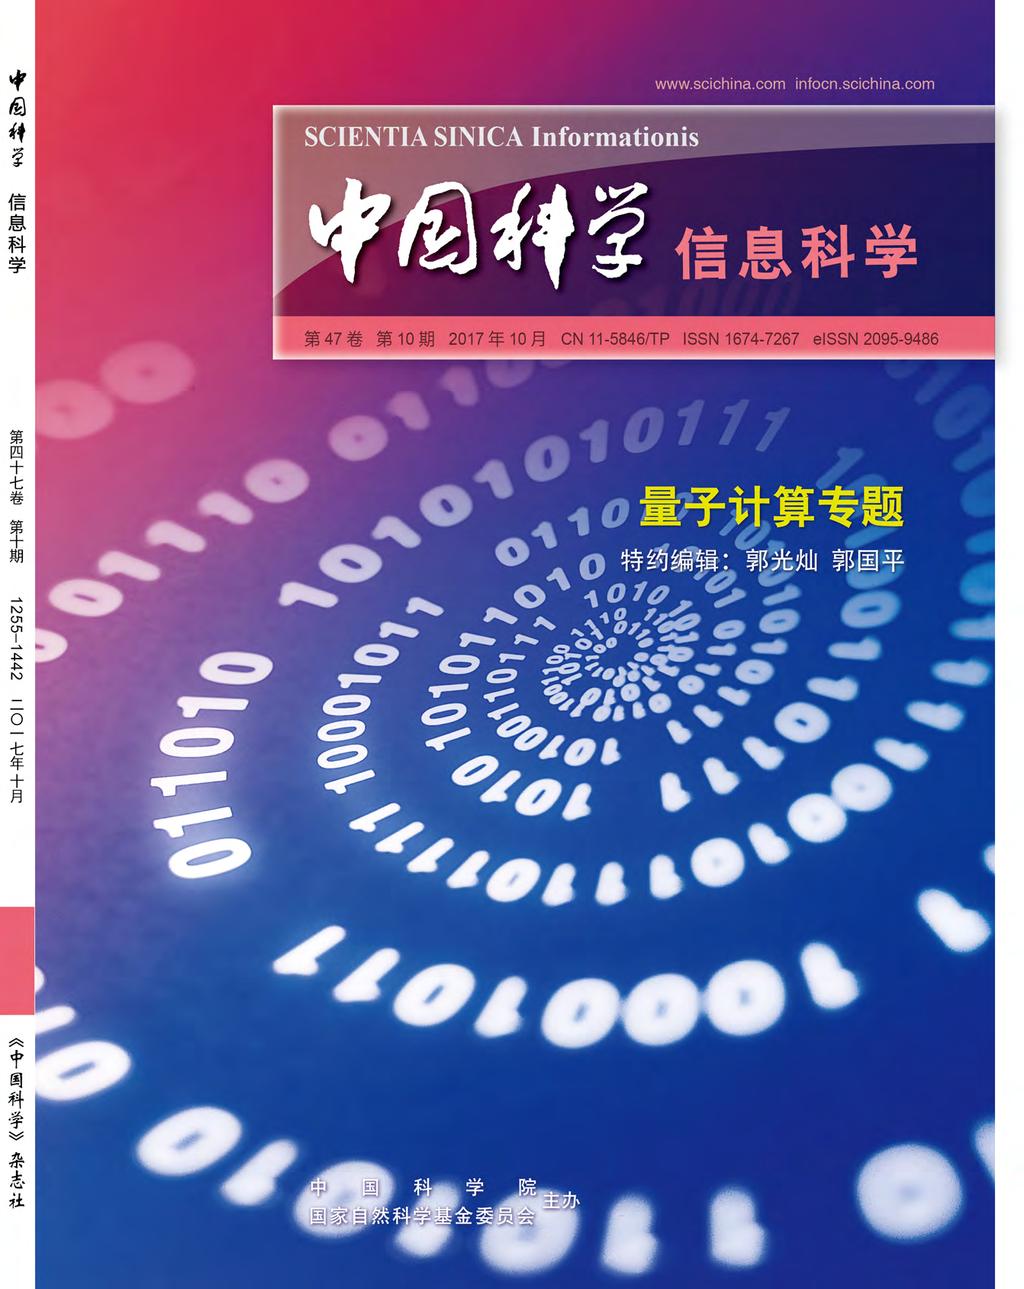 信息科学SCIENTIA SINICA Informationis (ZHONGGUO KEXUE XINXI KEXUE 